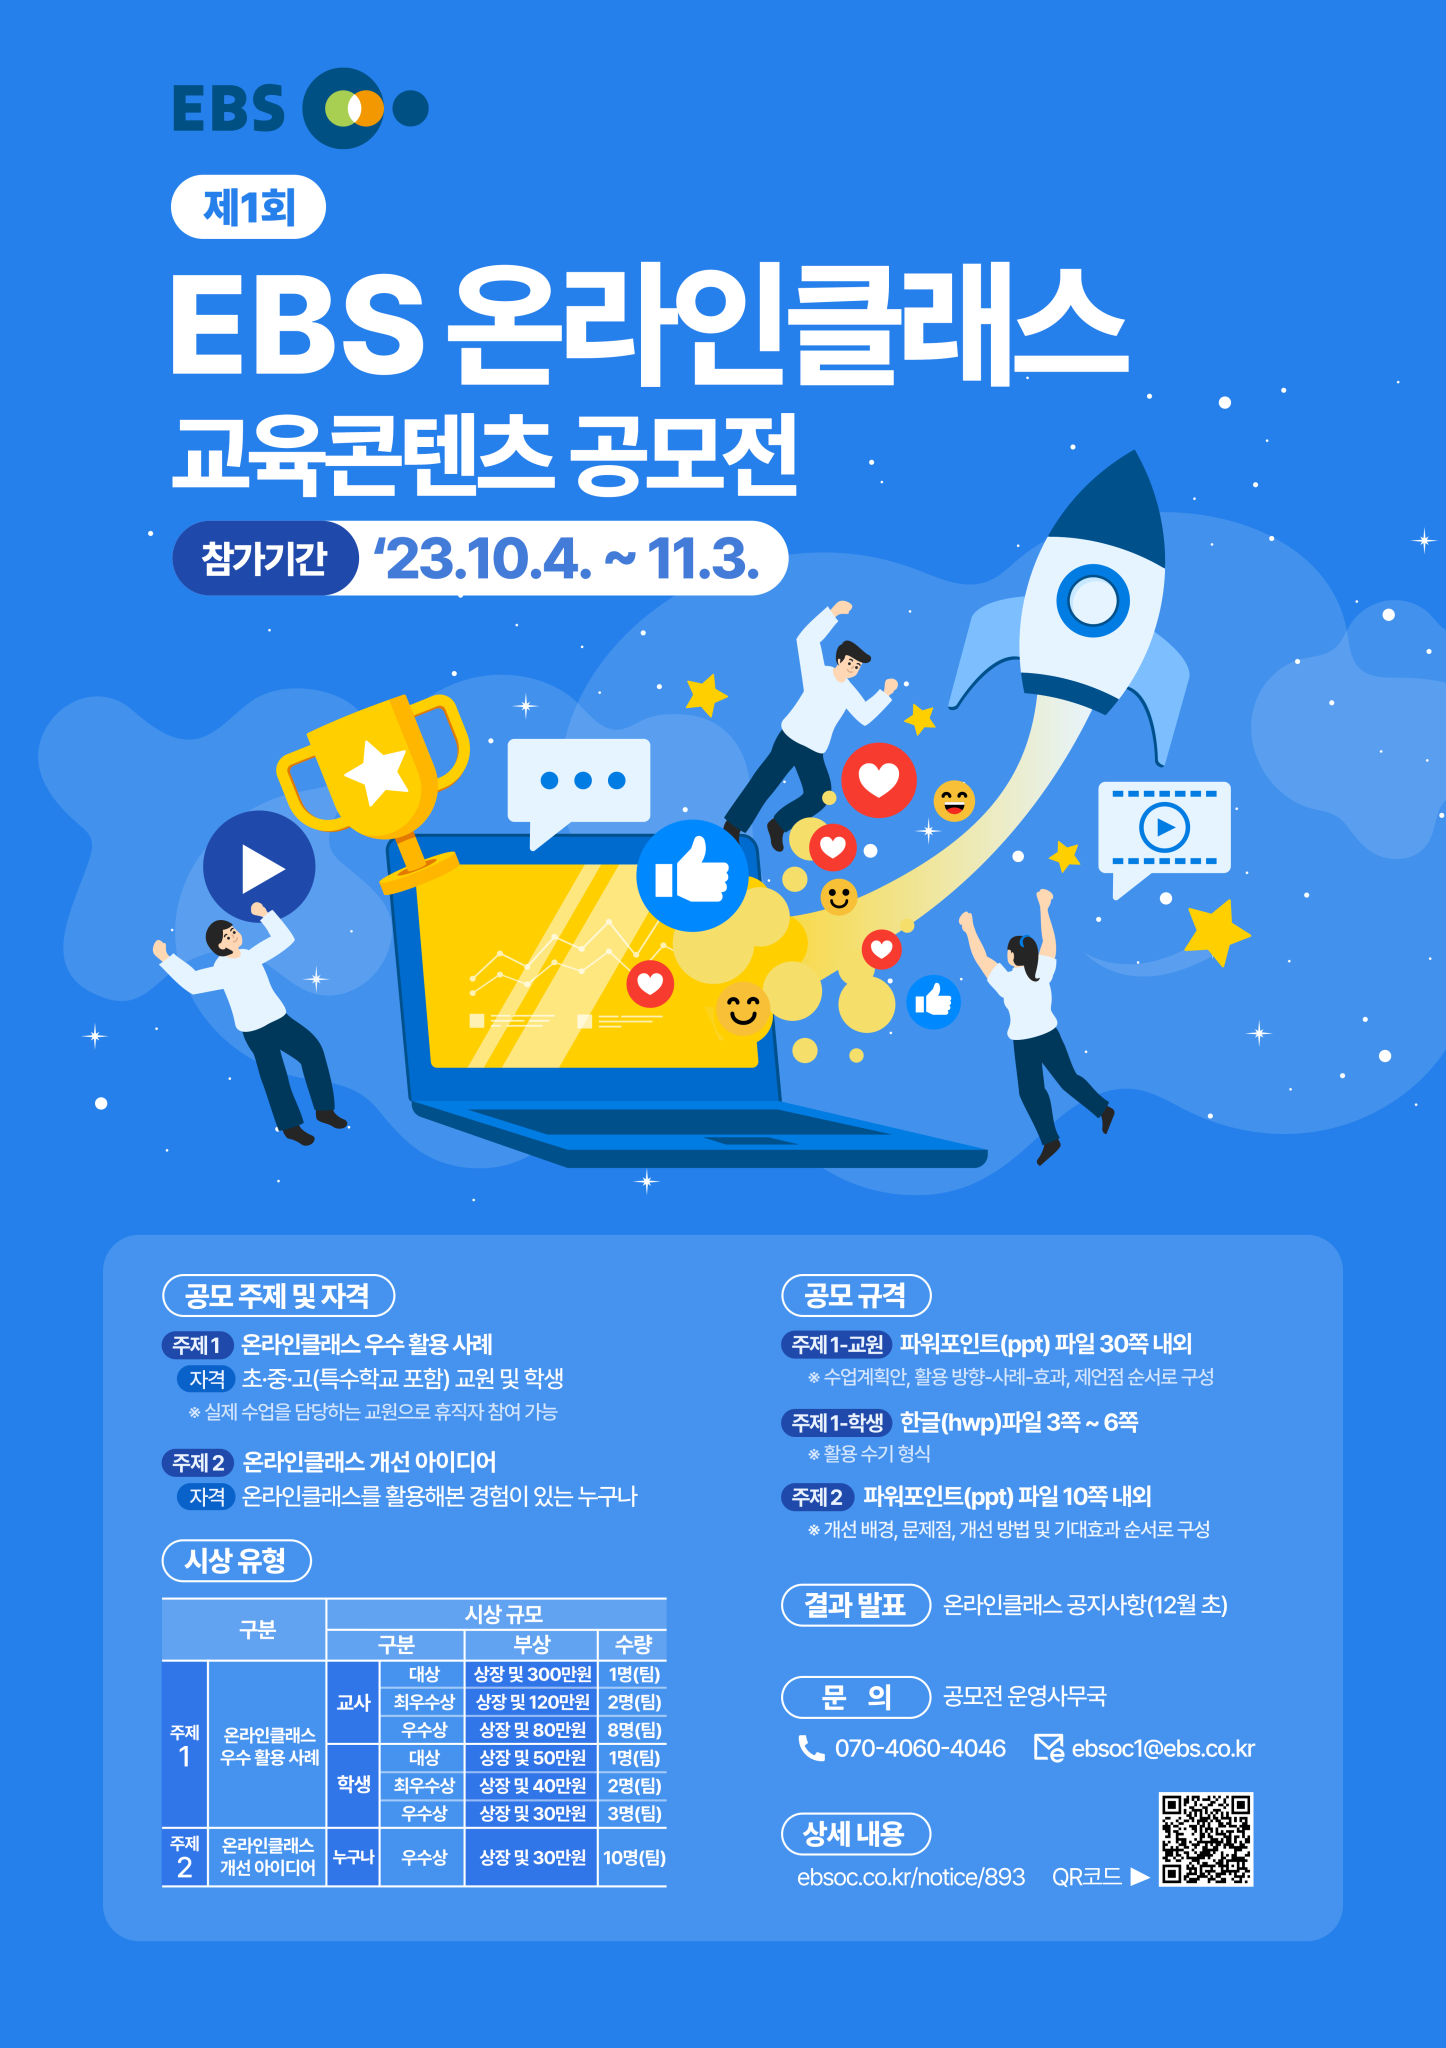 한국교육방송공사 디지털교육서비스부_공모전 공식 홍보 포스터